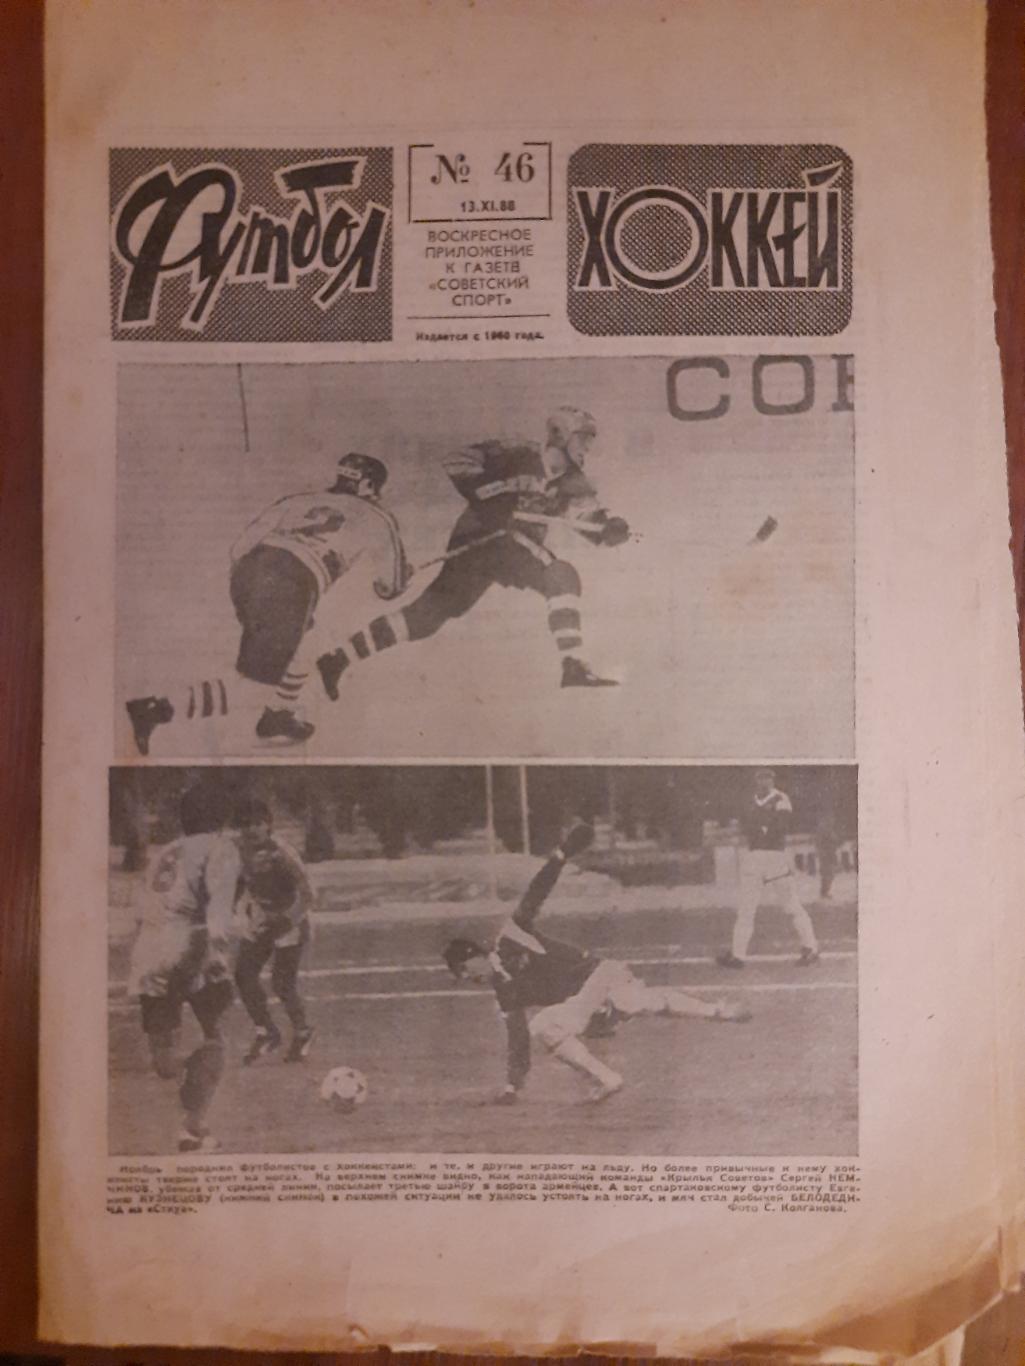 еженедельник футбол-хоккей #46,1988